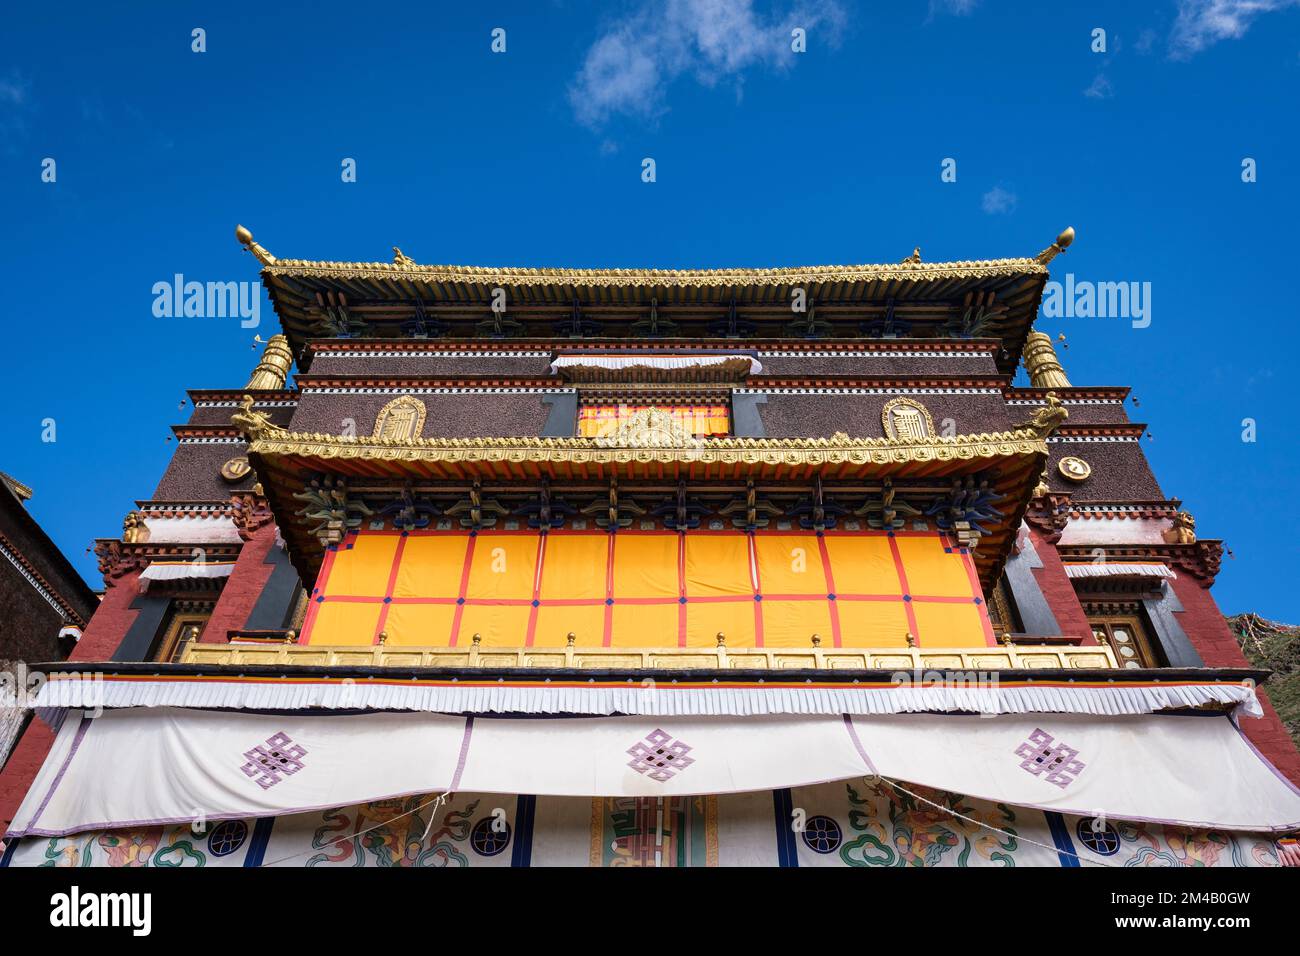 Tashi Lhunpo Monastery. Shigatse. Tibet Autonomous Region. China. Stock Photo